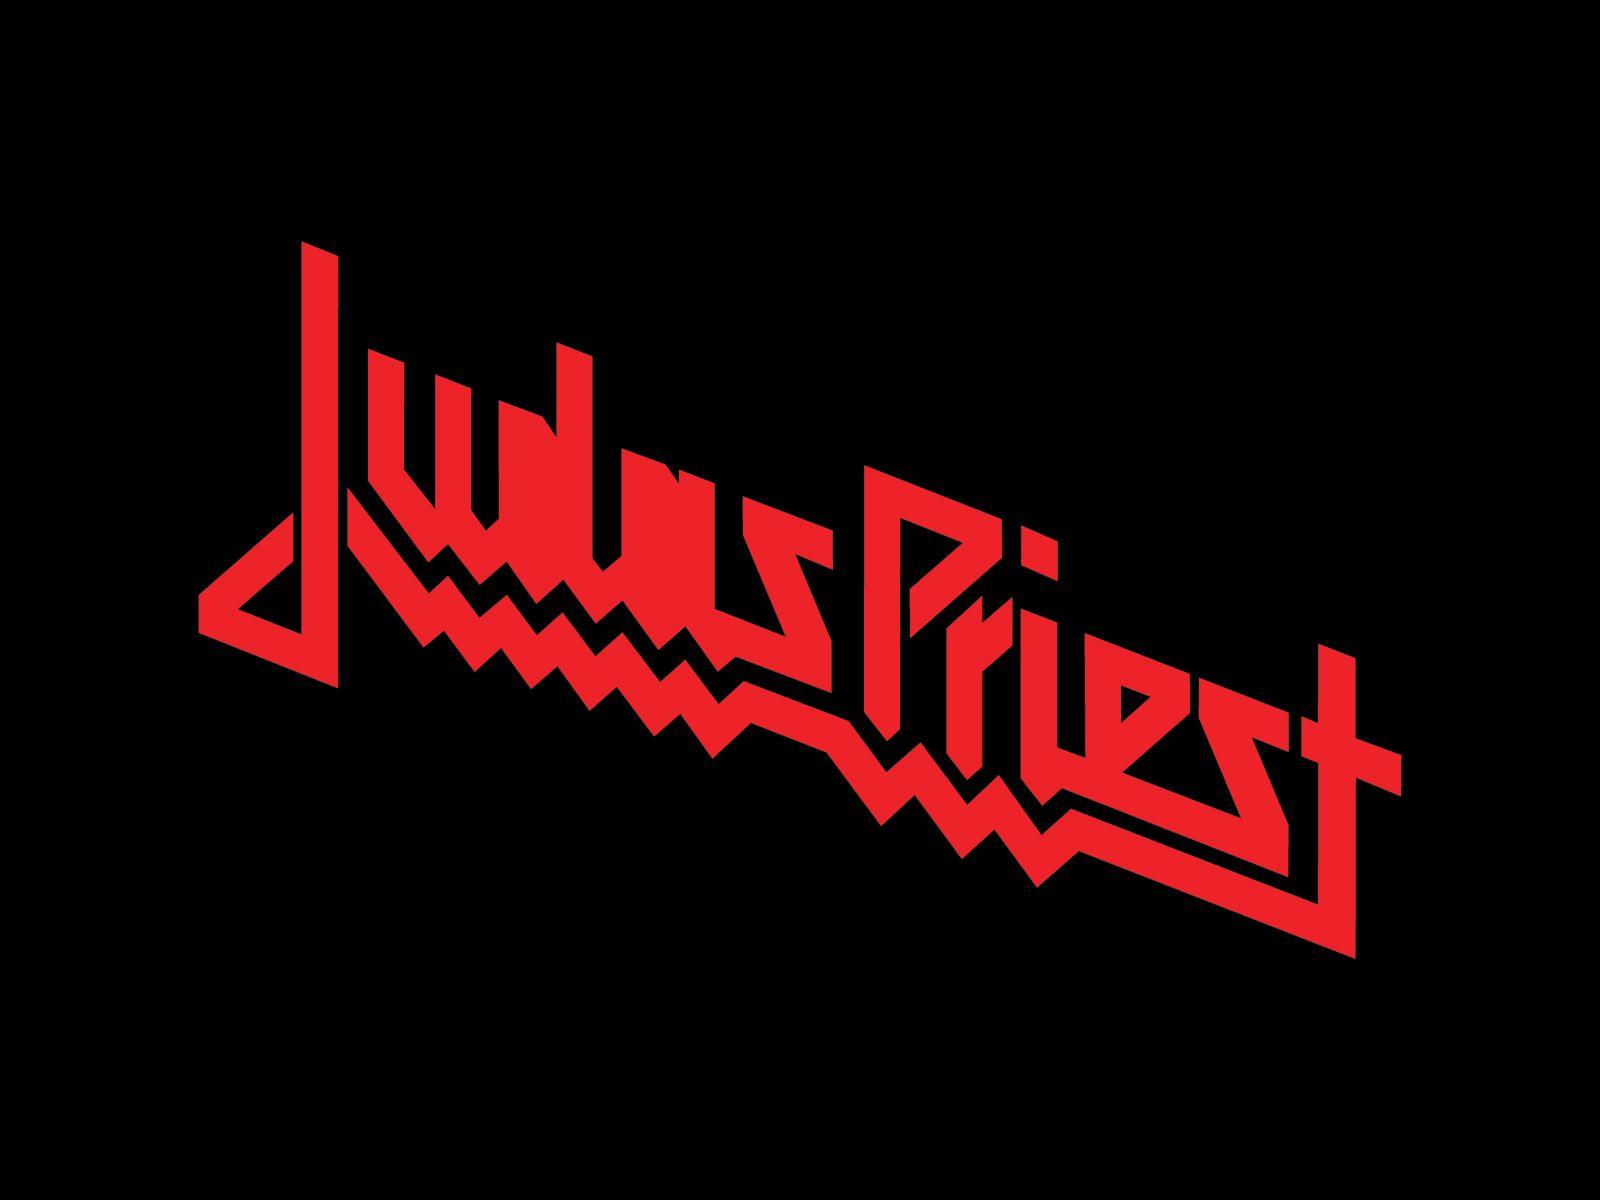 Judas Priest Band Logo - Judas Priest. Design. Judas Priest, 80s